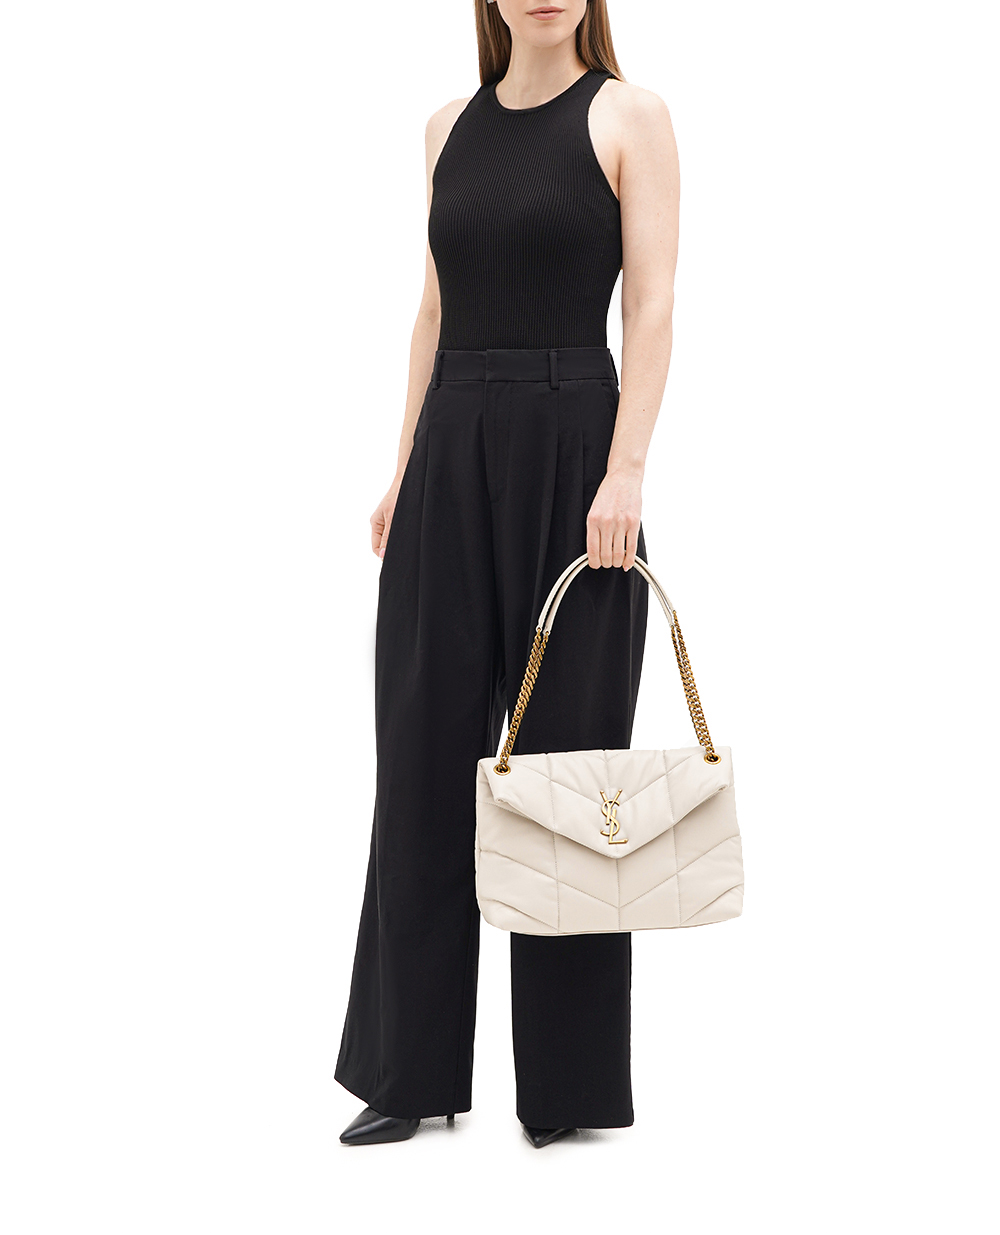 Кожаная сумка Loulou Puffer Medium Saint Laurent 577475-1EL07, белый цвет • Купить в интернет-магазине Kameron